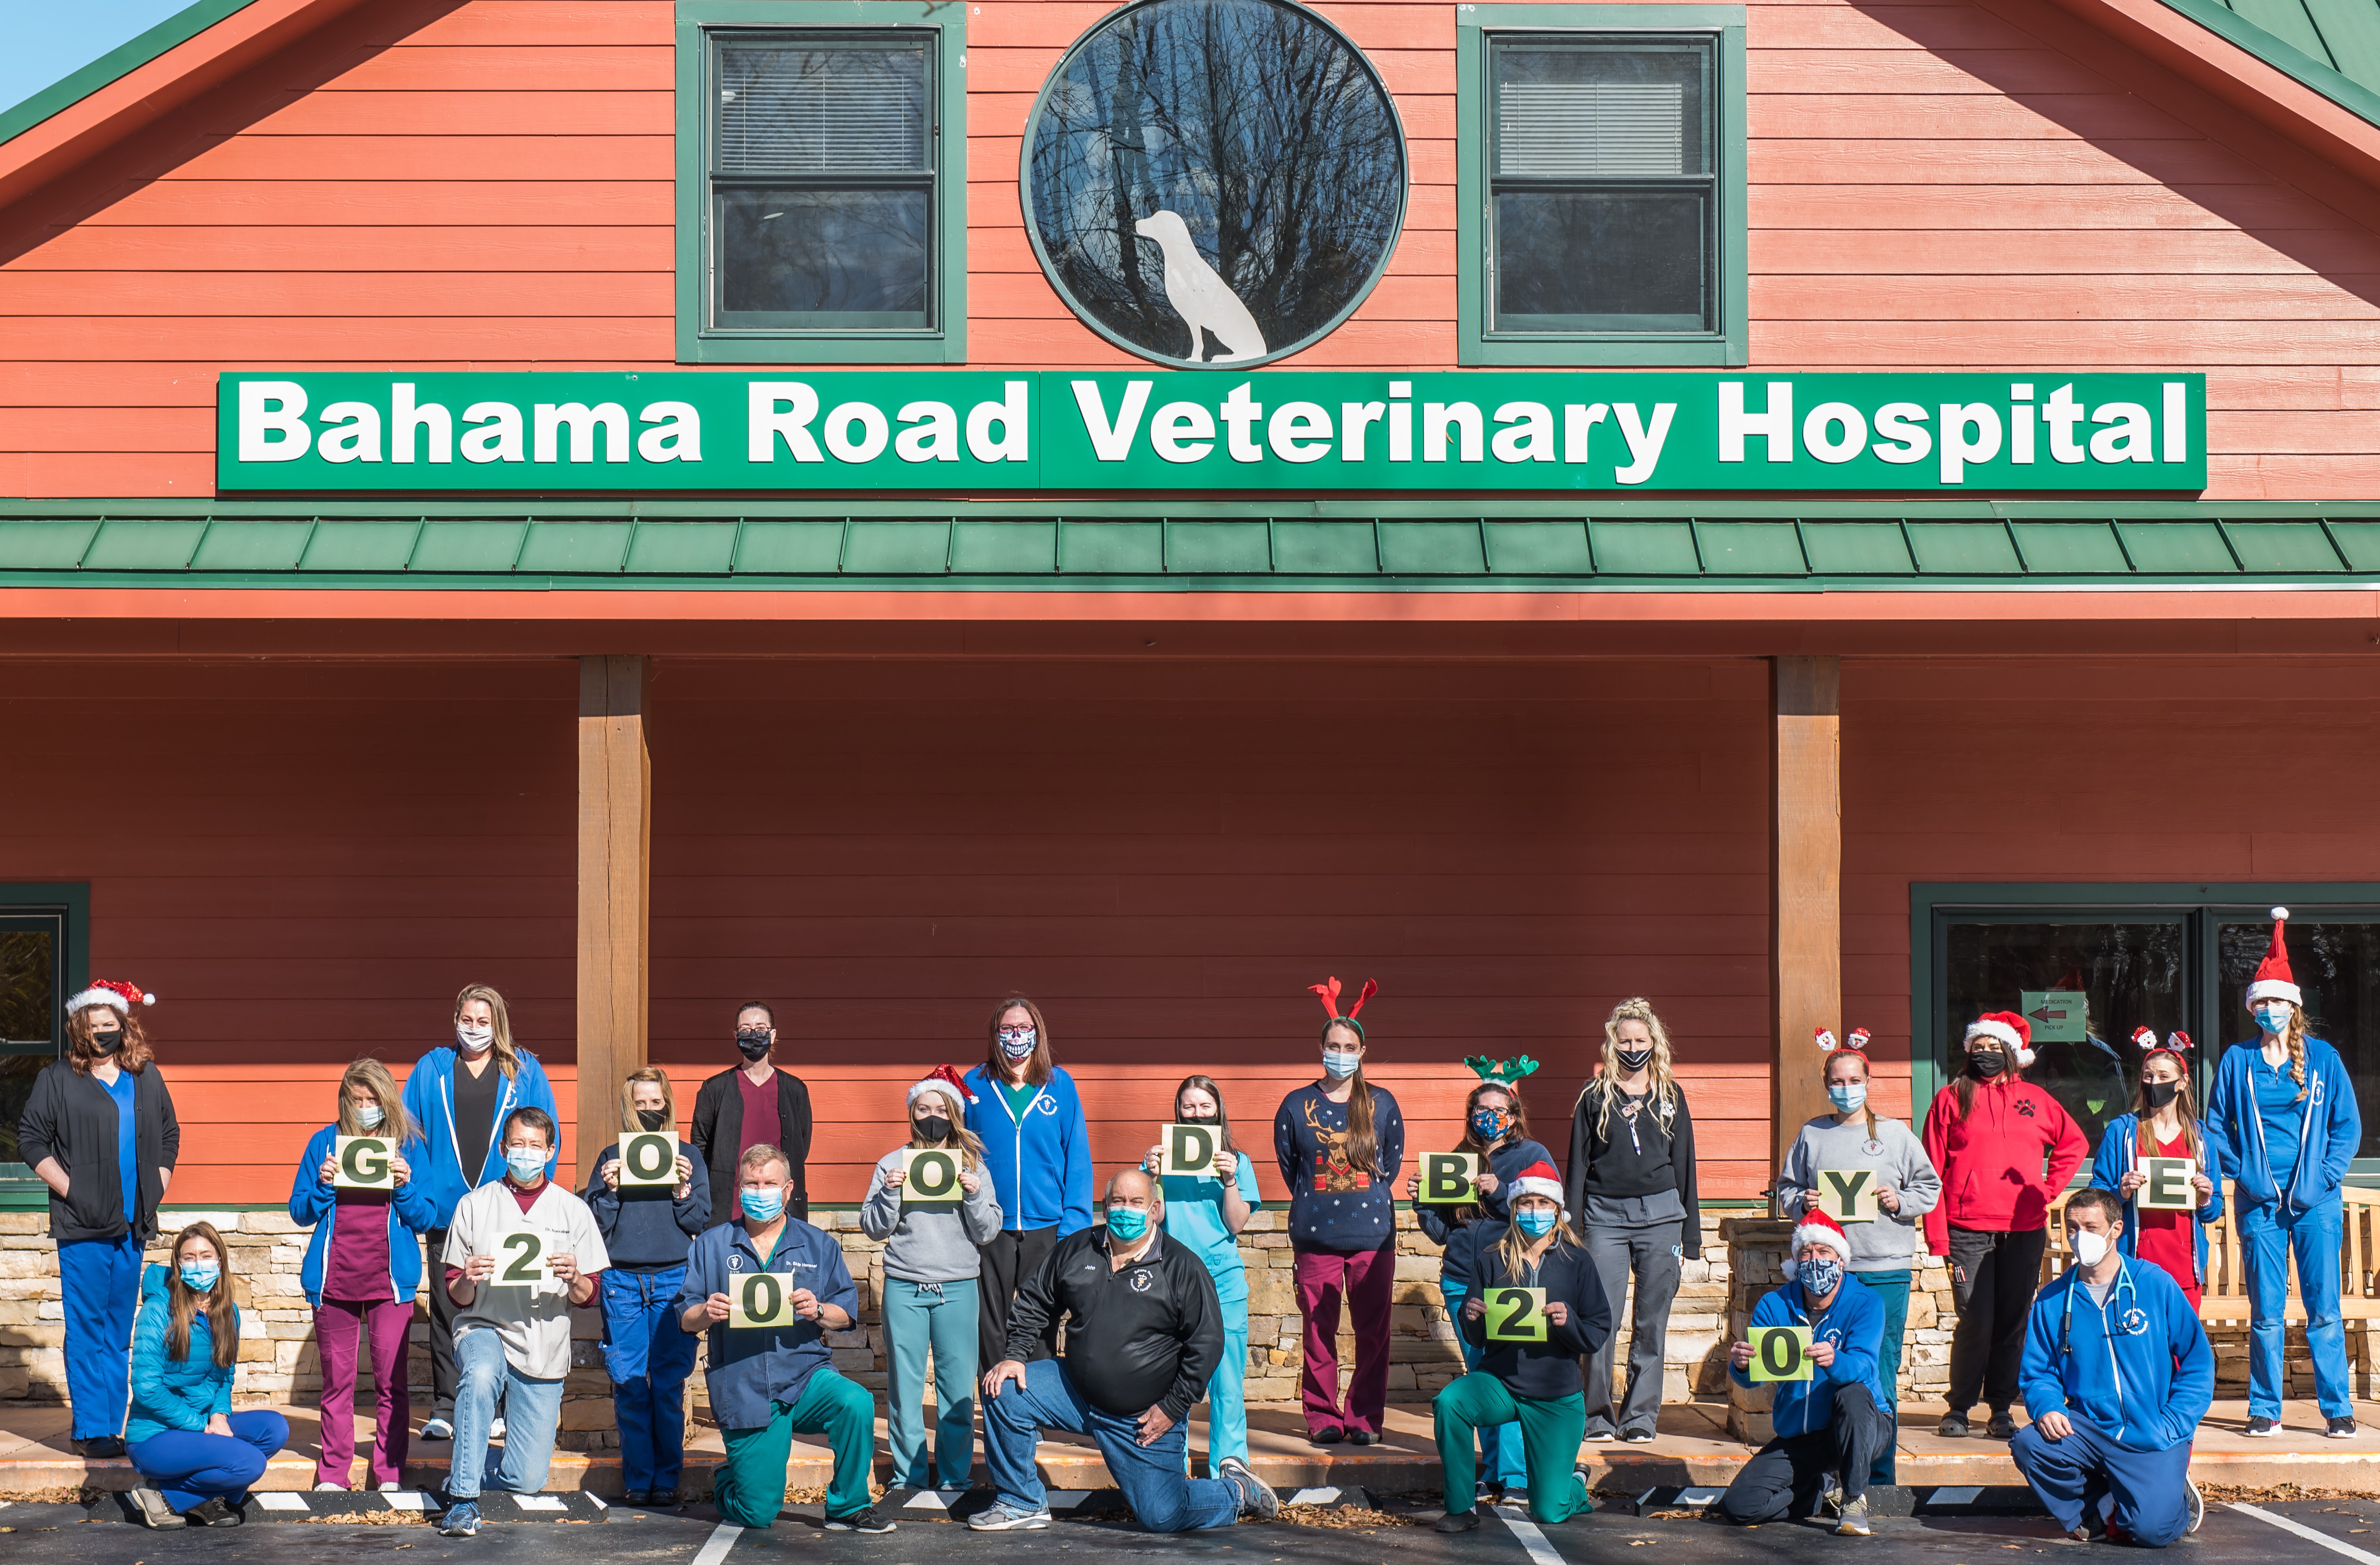 Bahama Road Veterinary Hospital staff